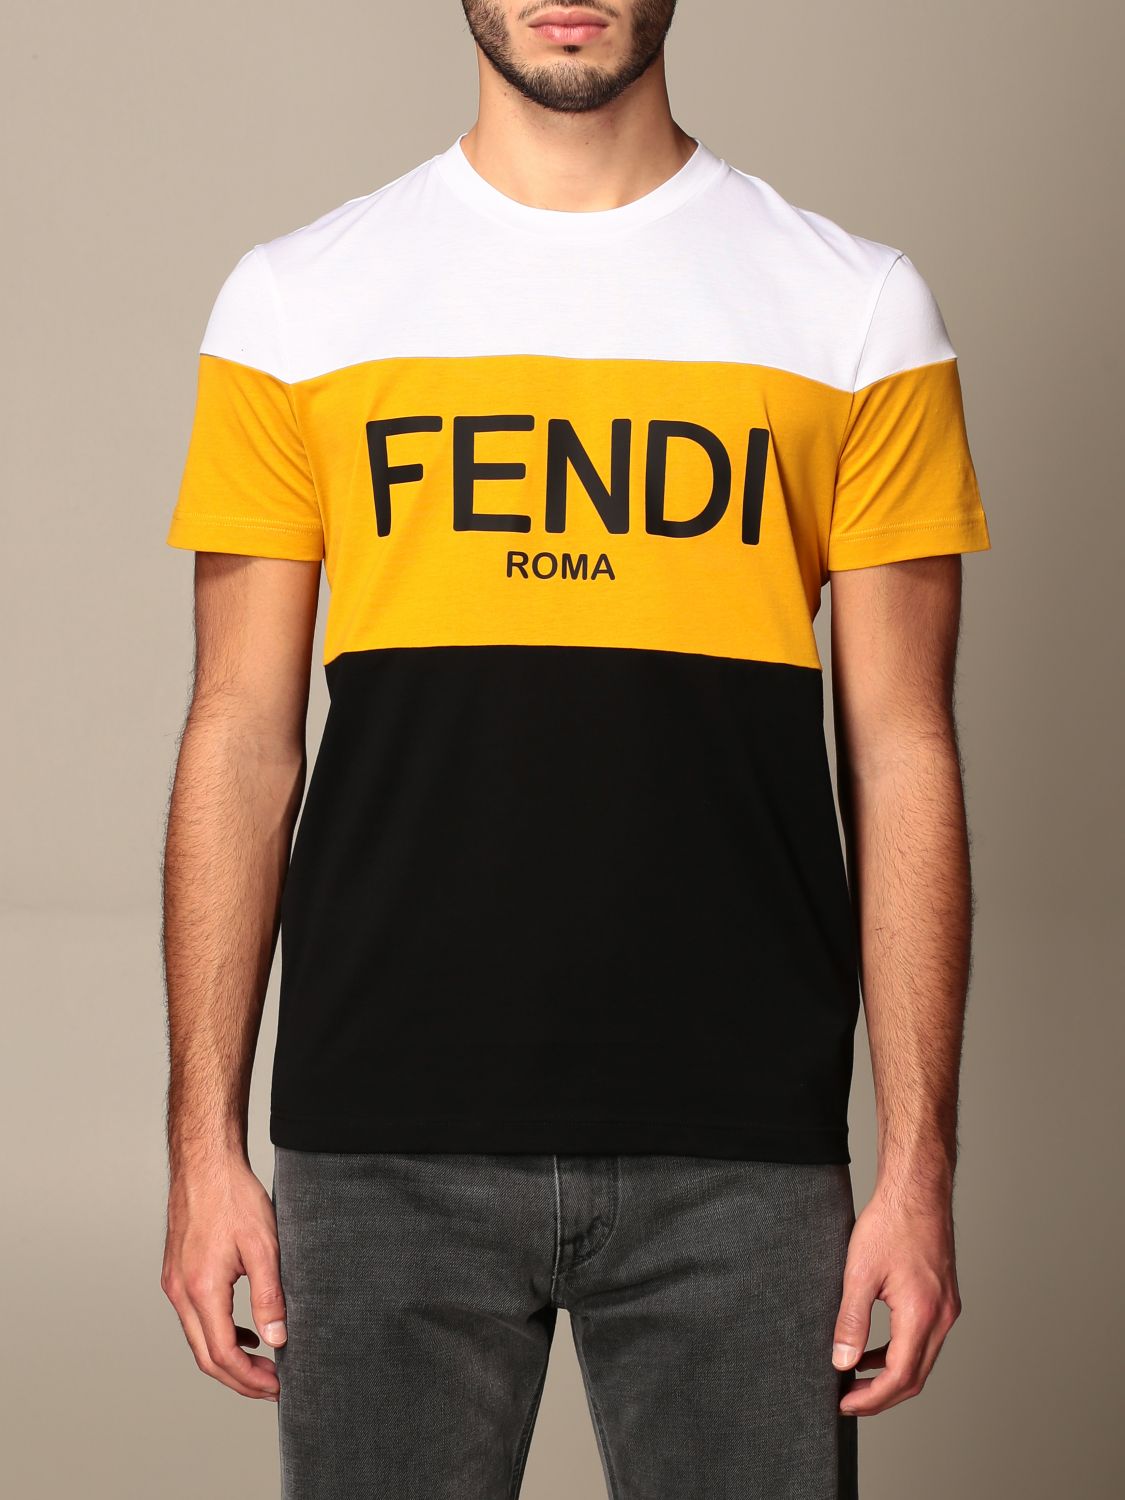 fendi roma men's t shirt